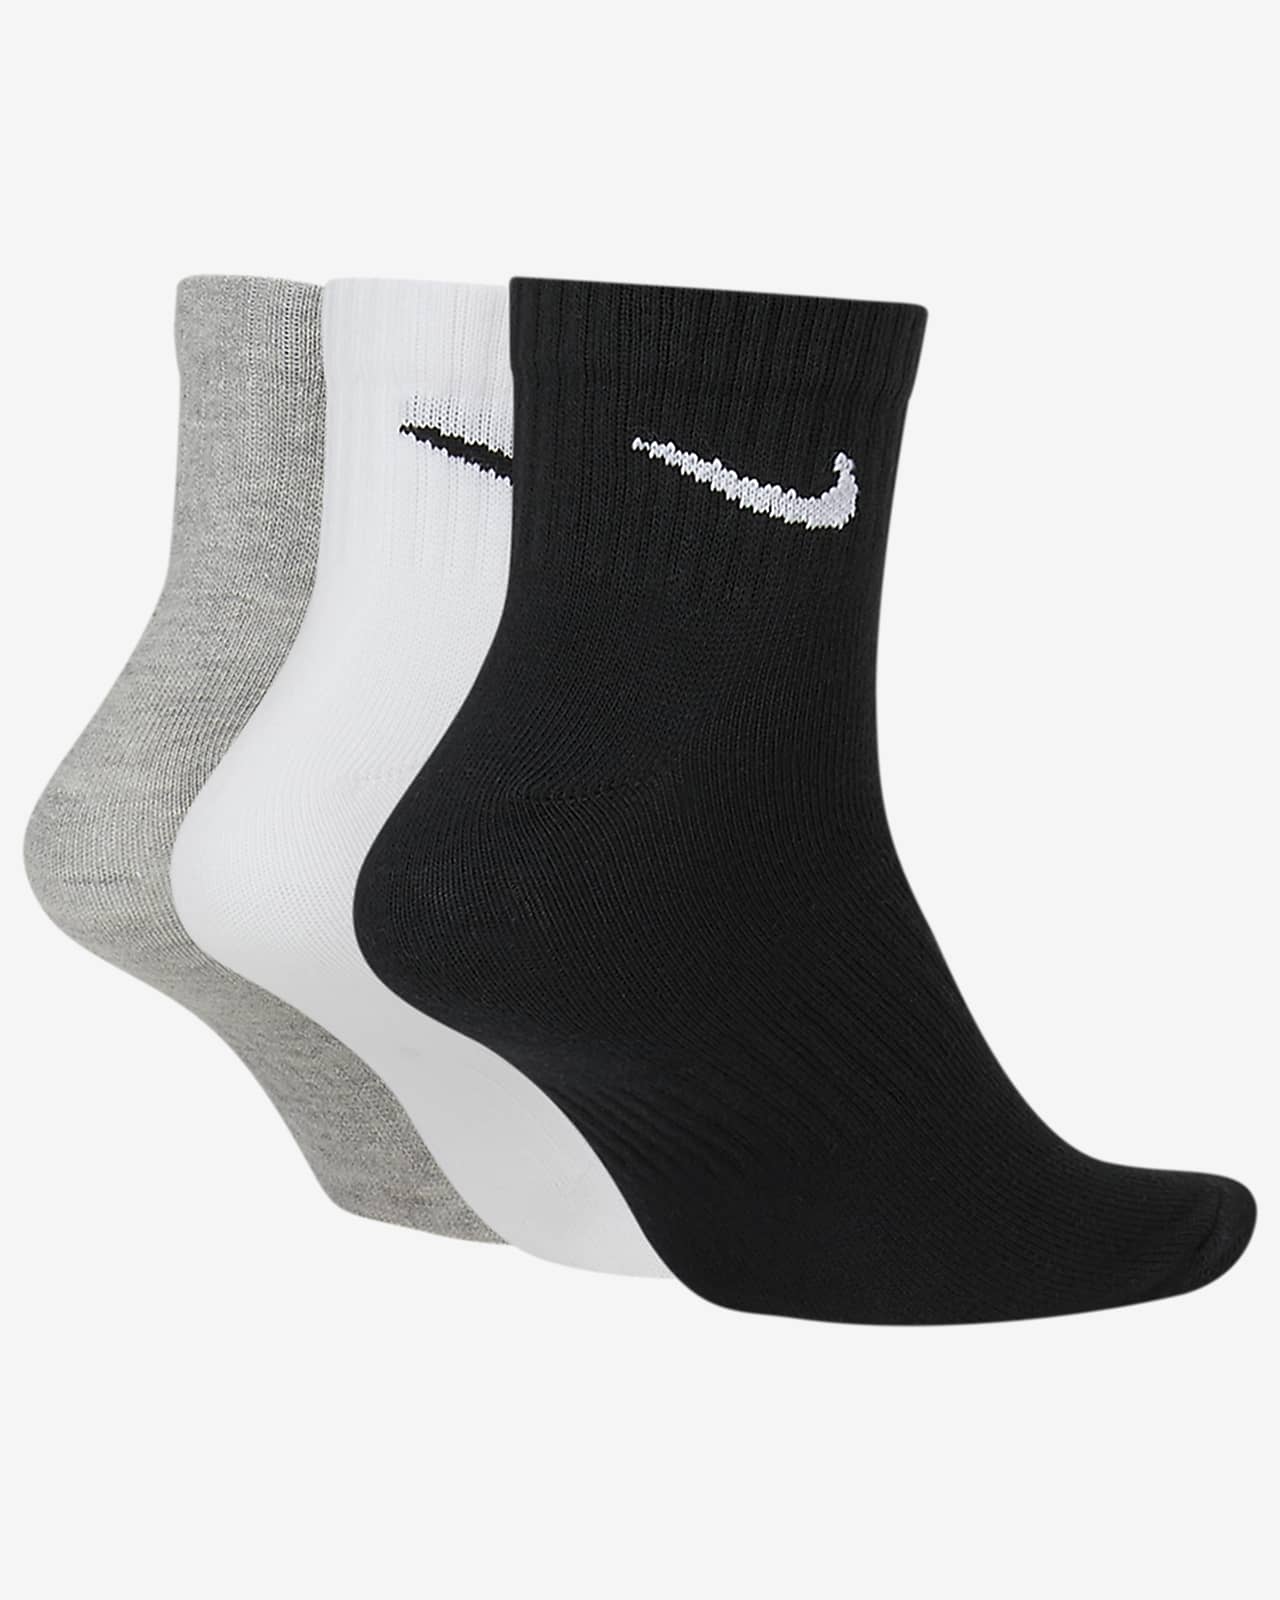 nike long ankle socks